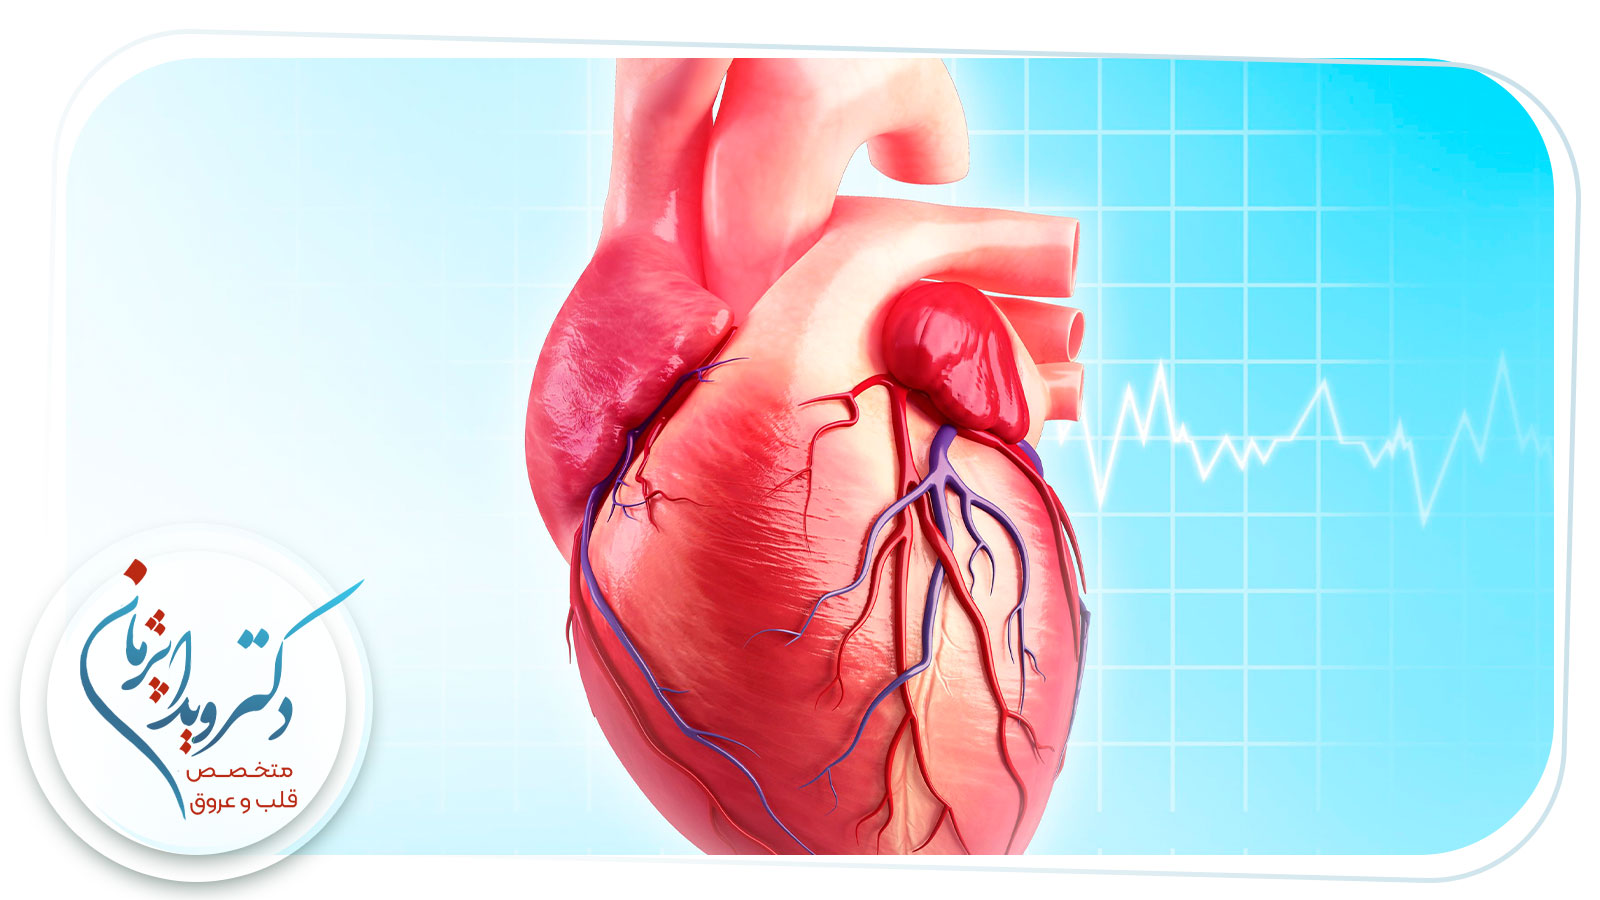 تفاوت نوار قلب با هالتر چیست؟